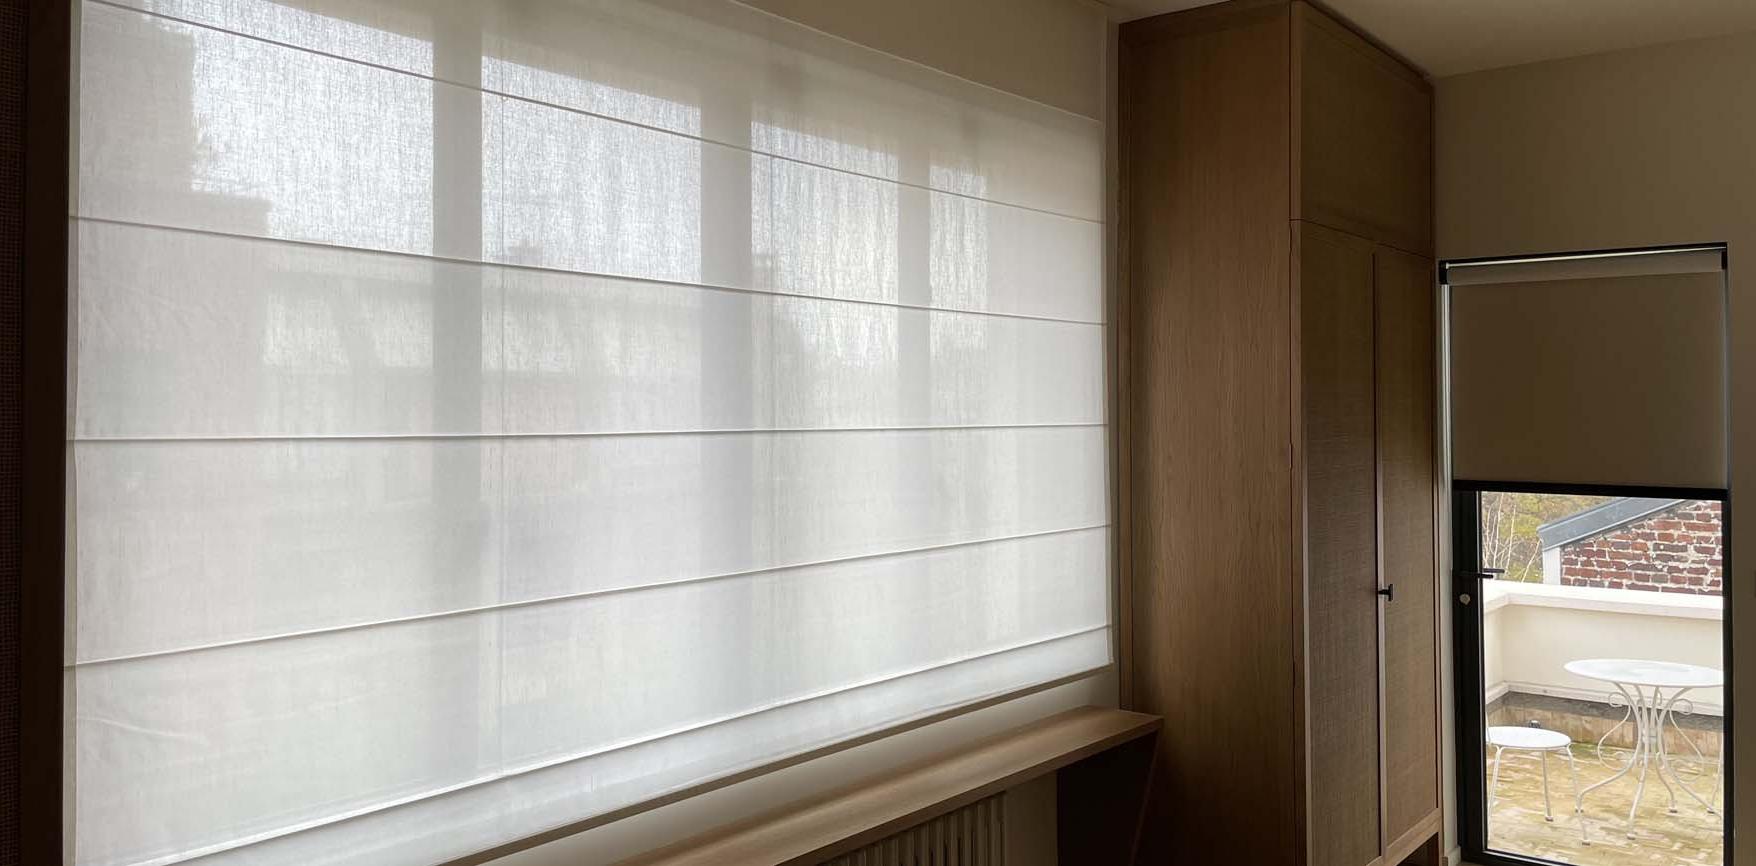 Dans la suite parentale, un store Bateau de très grande largeur cadre la fenêtre afin de filtrer les regards.